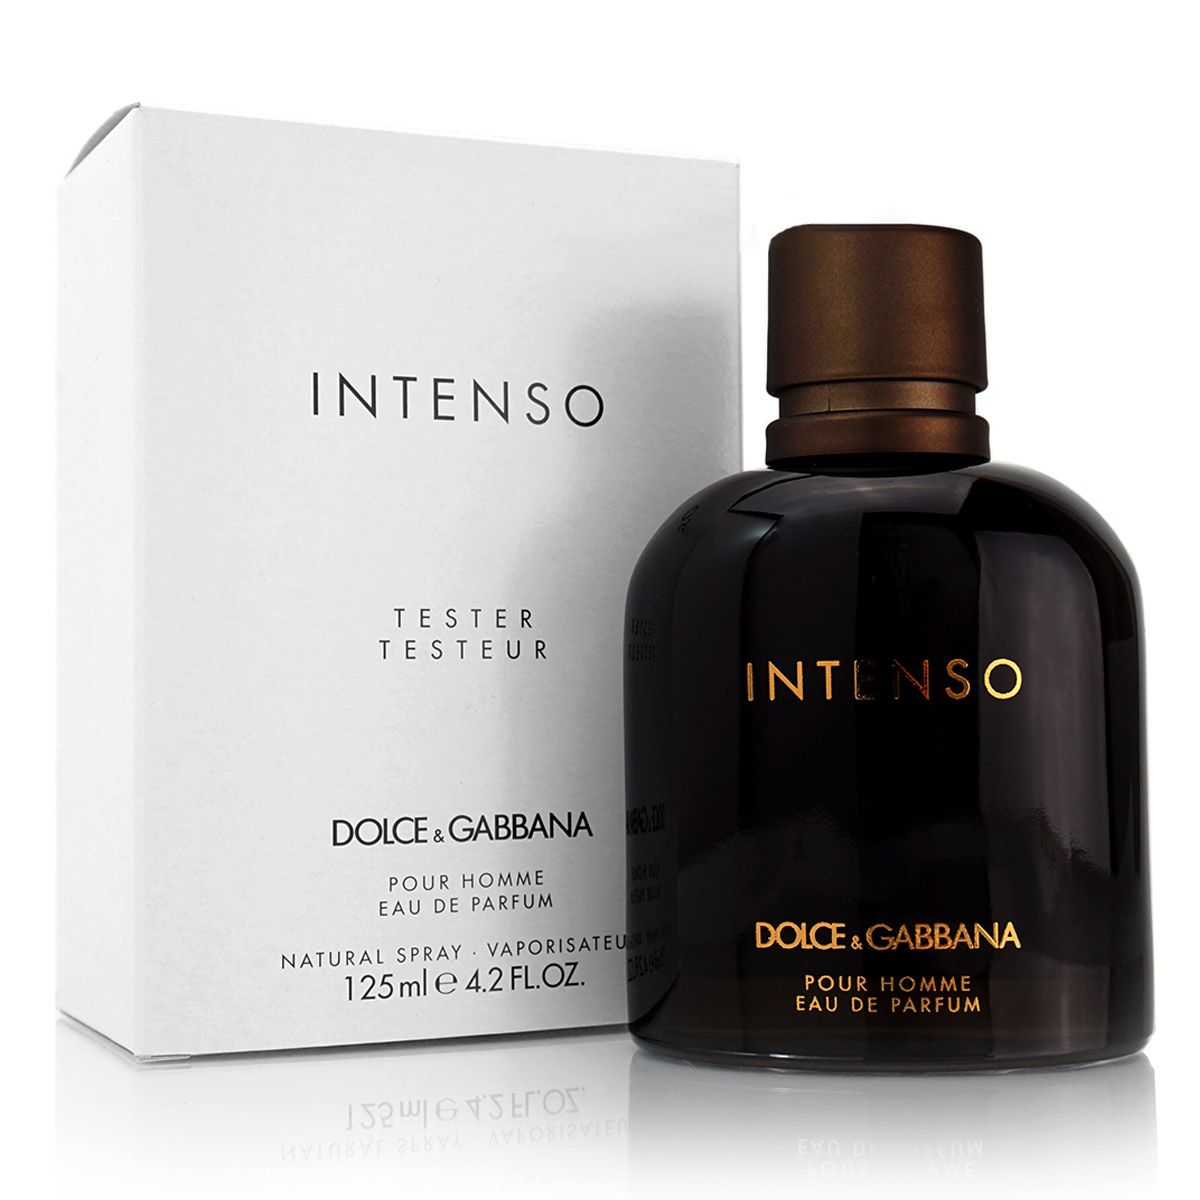 Nước hoa Dolce & Gabbana Pour Homme Intenso (Eau de Parfum/125ml) chính  hãng Dolce & Gabbana cao cấ - FIT - Đặc quyền ưu đãi